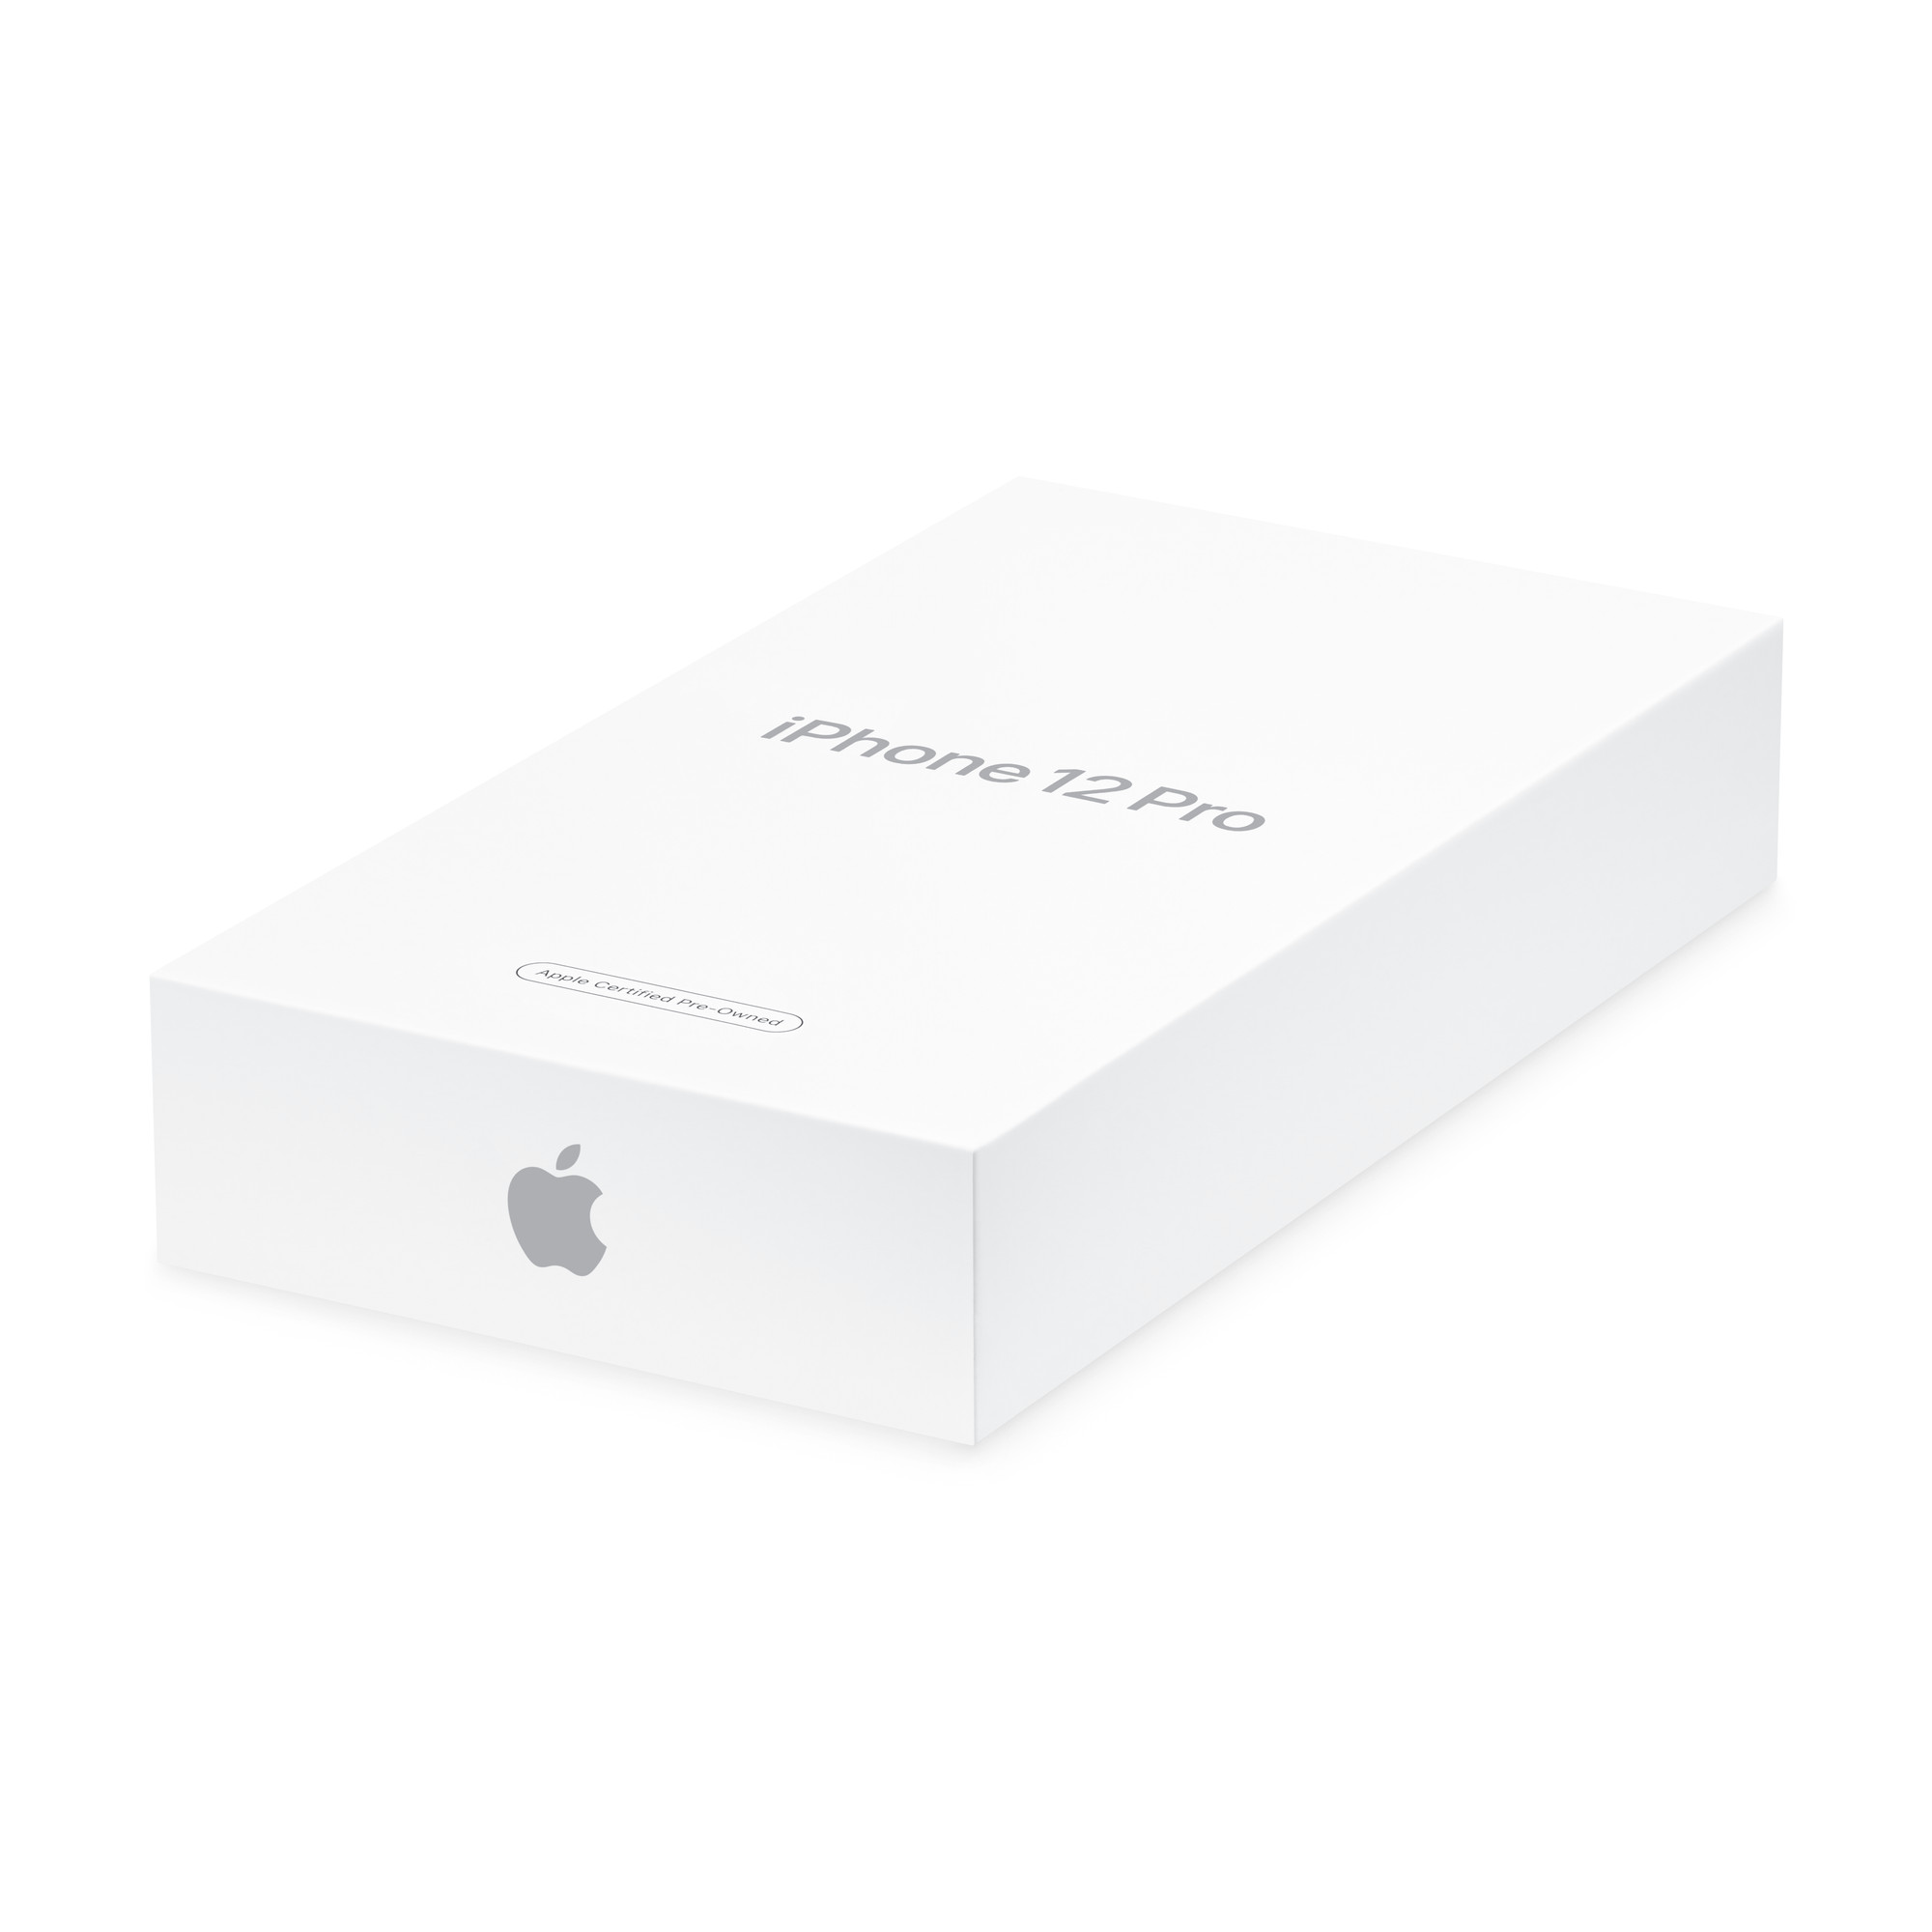 Apple mở bán lại iPhone 12 Pro hàng tân trang